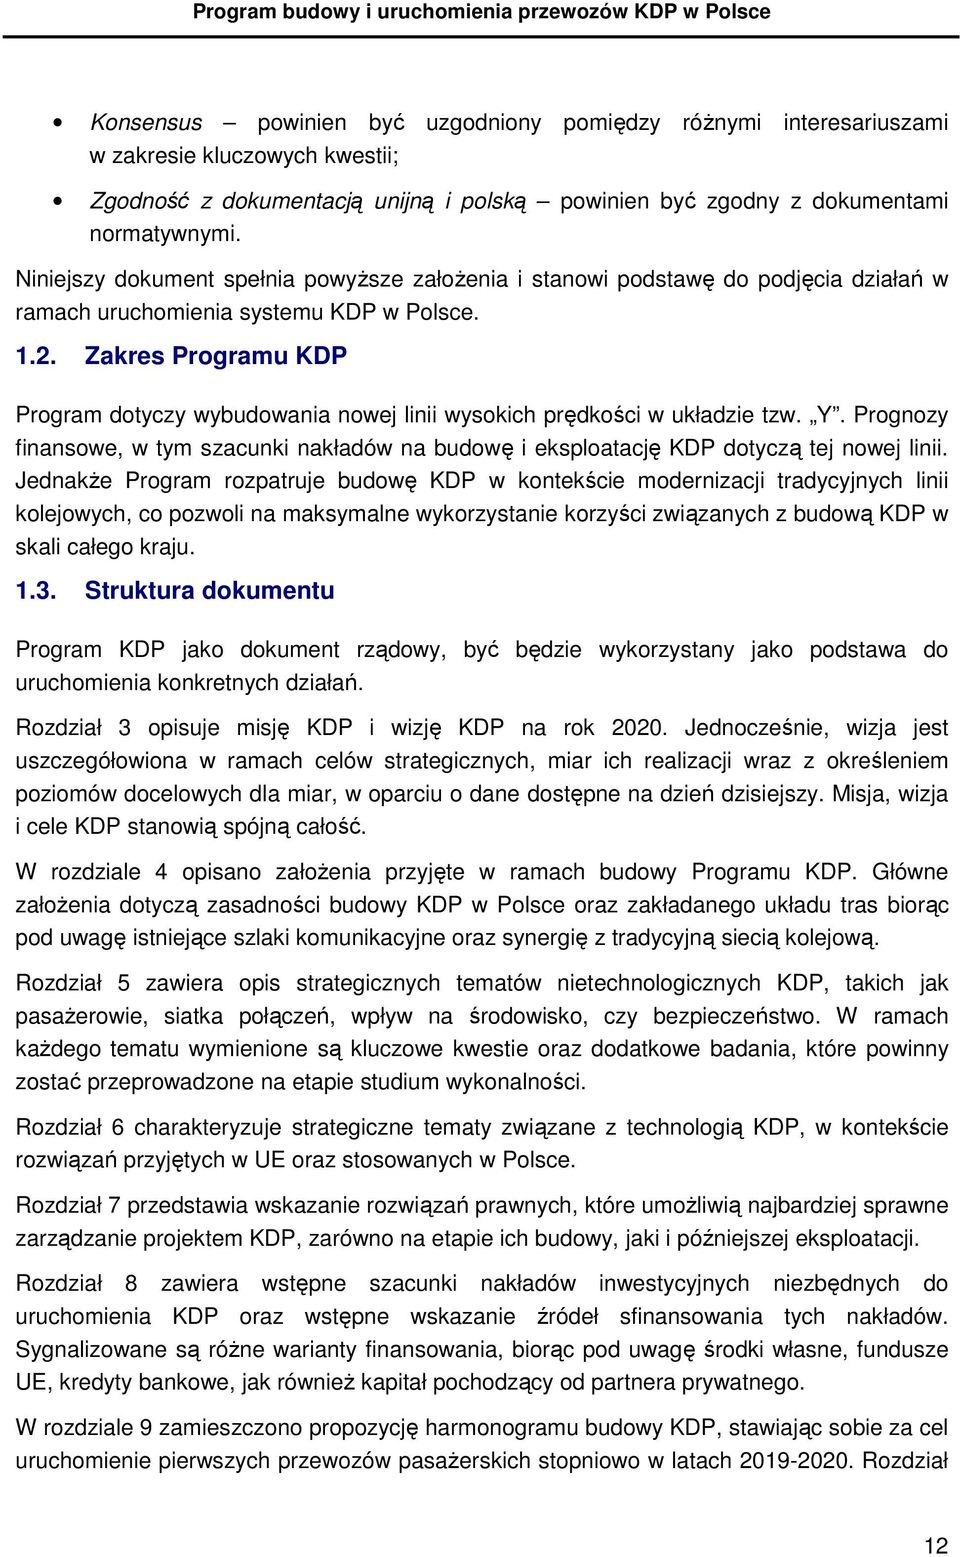 Zakres Programu KDP Program dotyczy wybudowania nowej linii wysokich prędkości w układzie tzw. Y. Prognozy finansowe, w tym szacunki nakładów na budowę i eksploatację KDP dotyczą tej nowej linii.